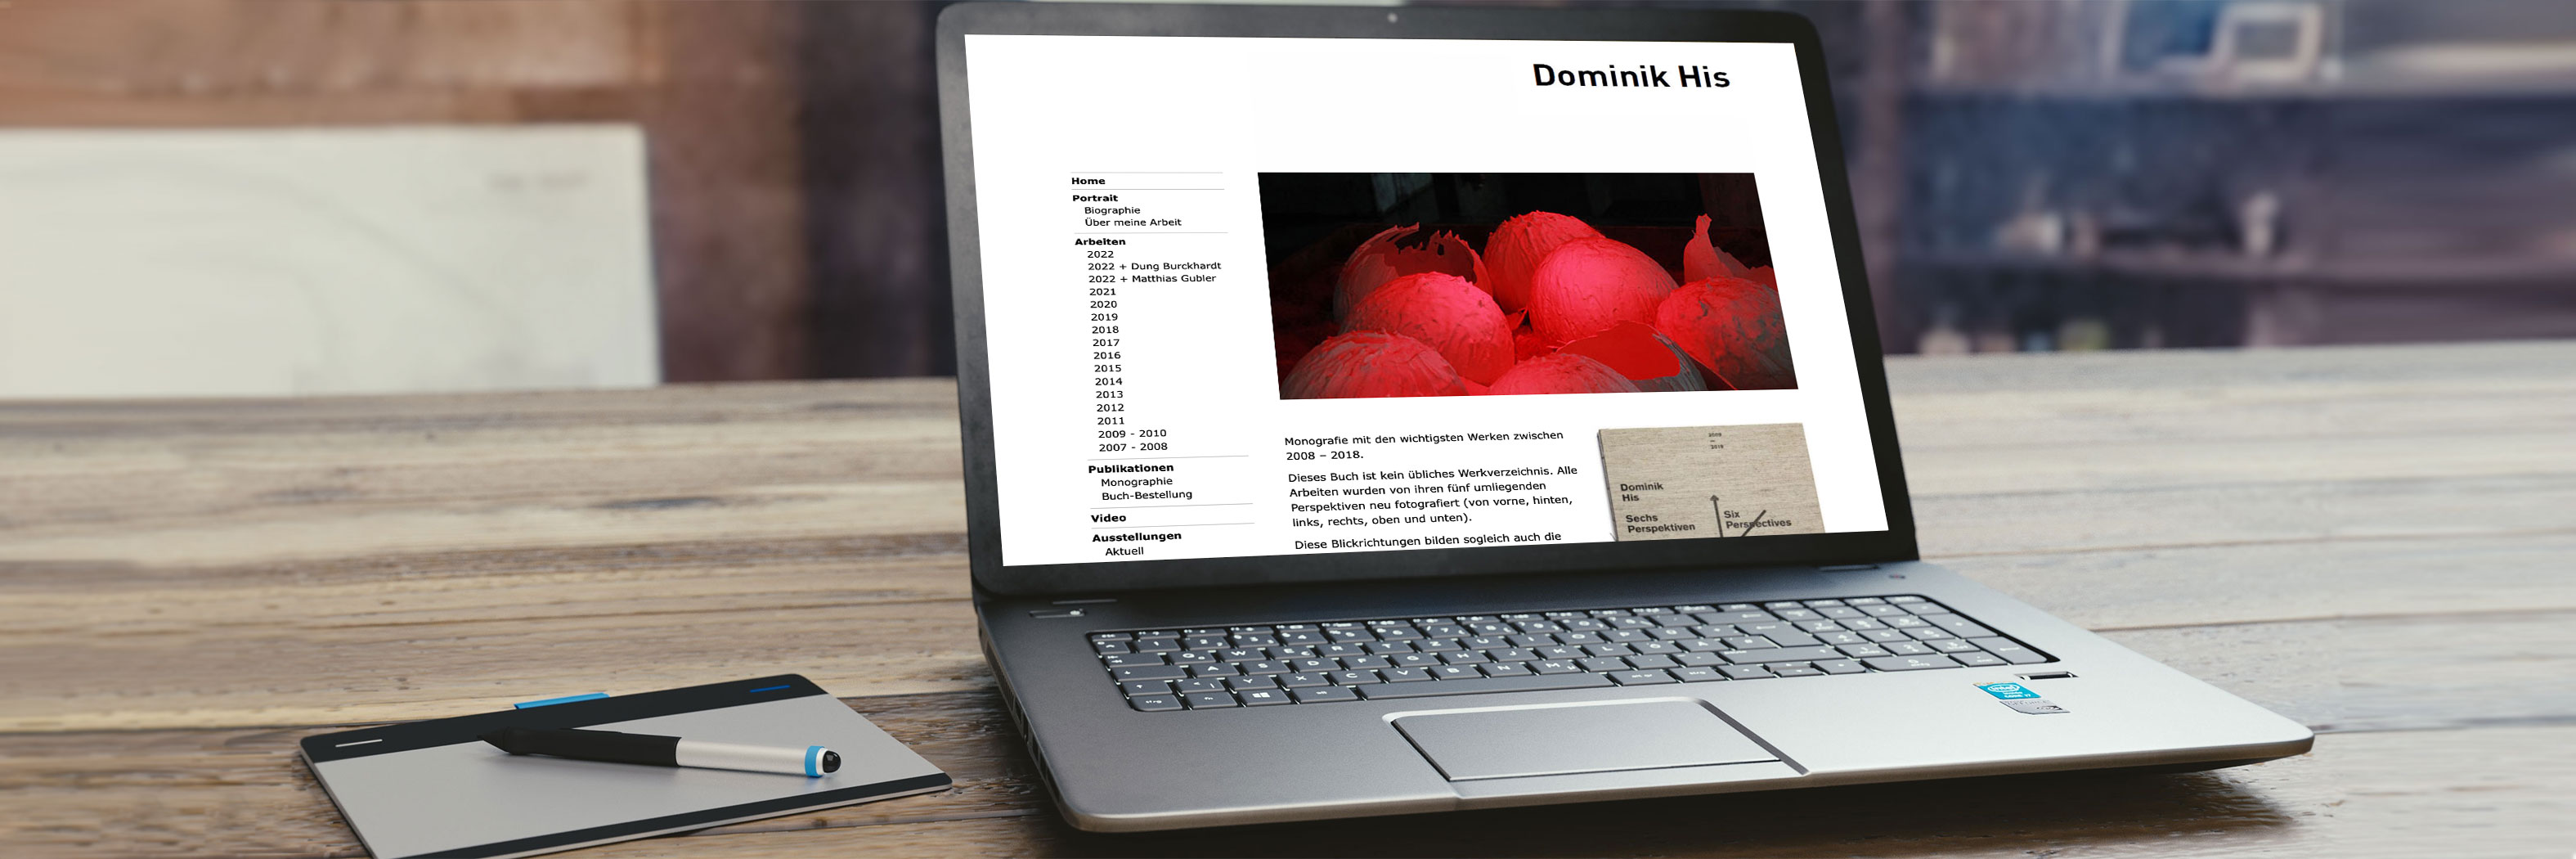 Website Dominik His